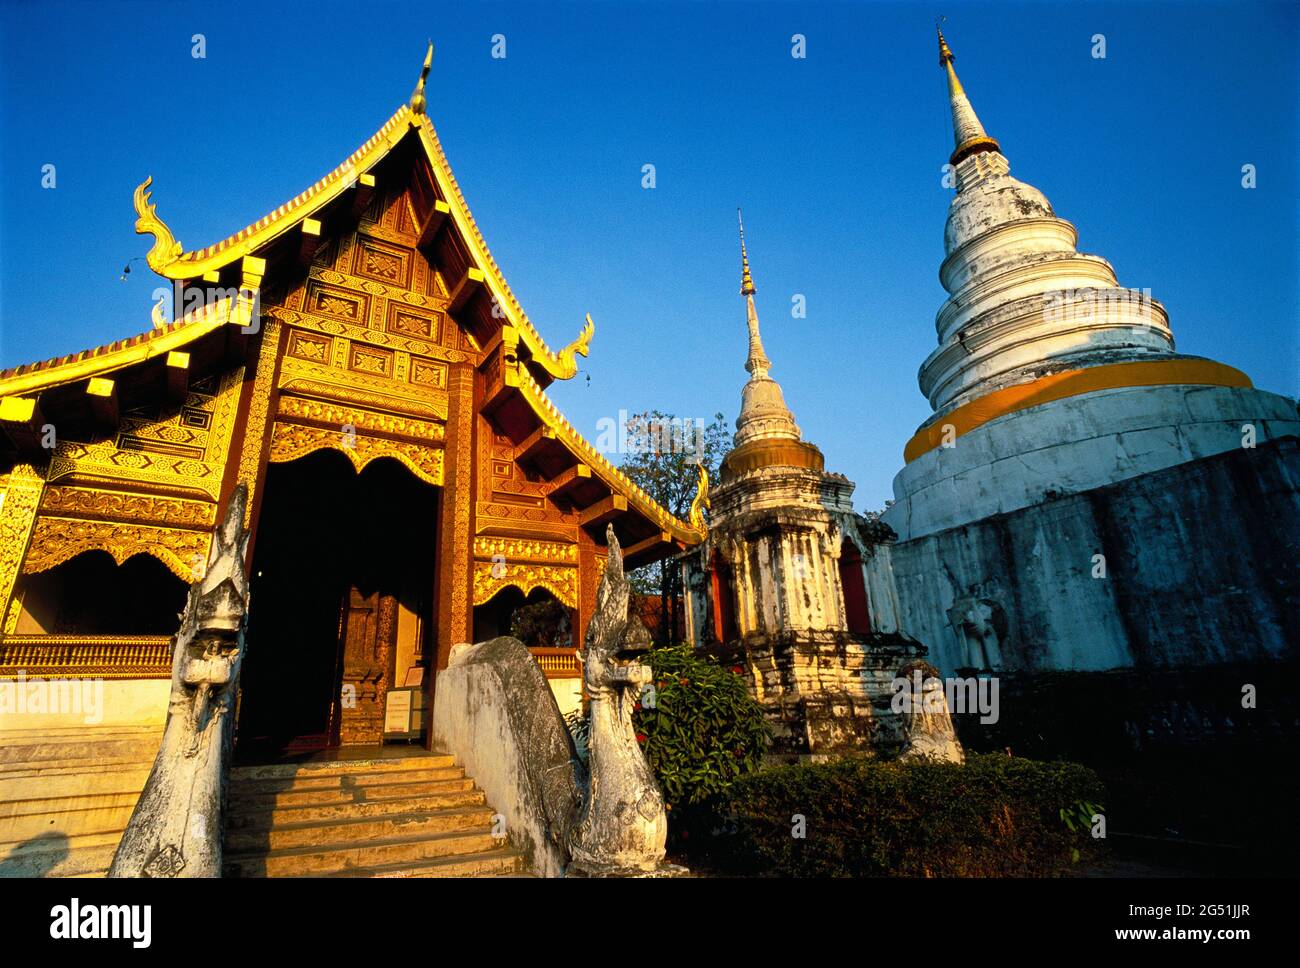 Estupas y vista exterior del templo de Wat Phra Singh, provincia de Chiang Mai, Tailandia Foto de stock